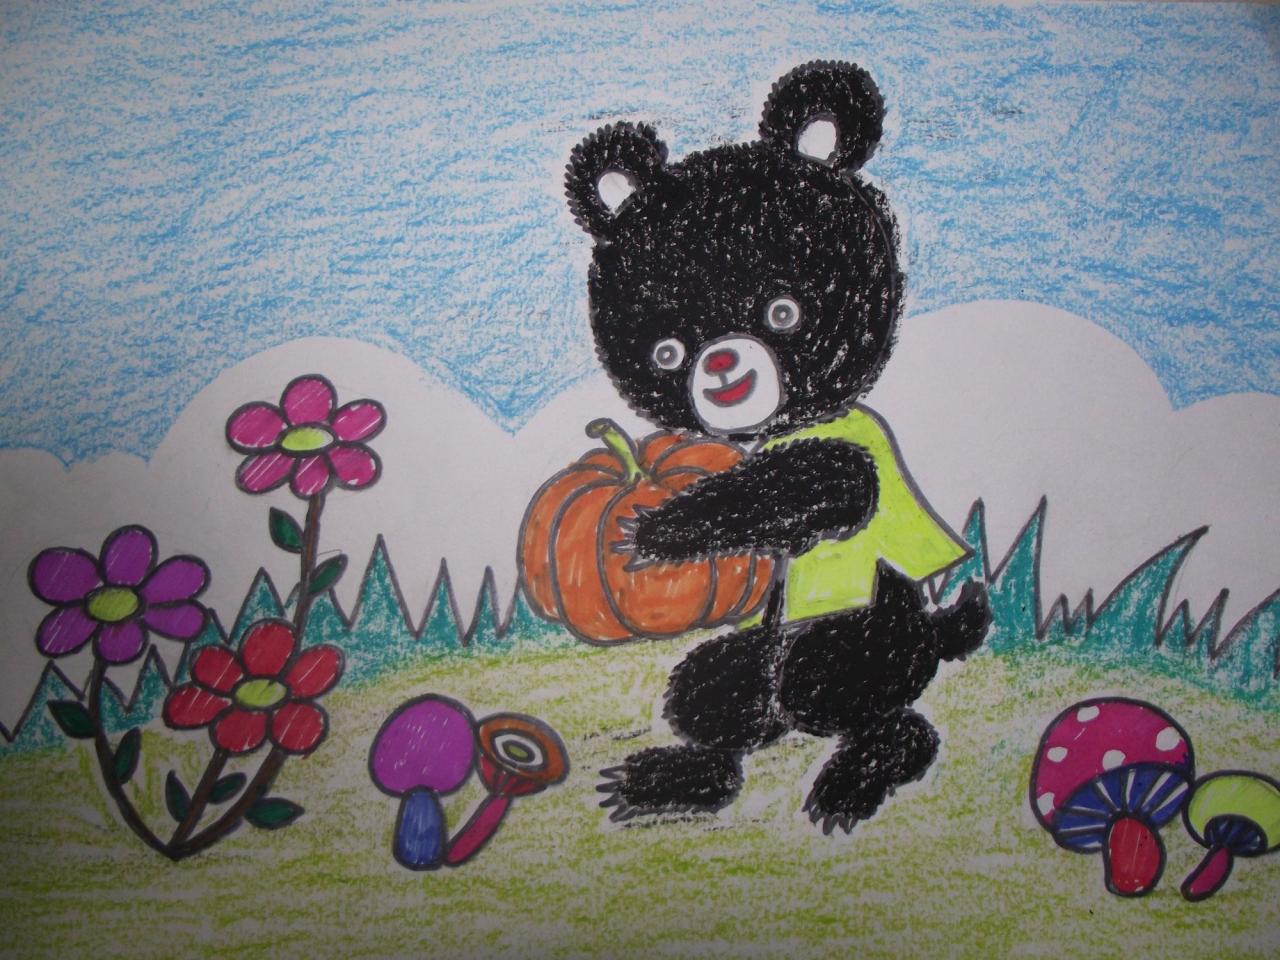 少儿学蜡笔画系列——小黑熊的画法 完成稿